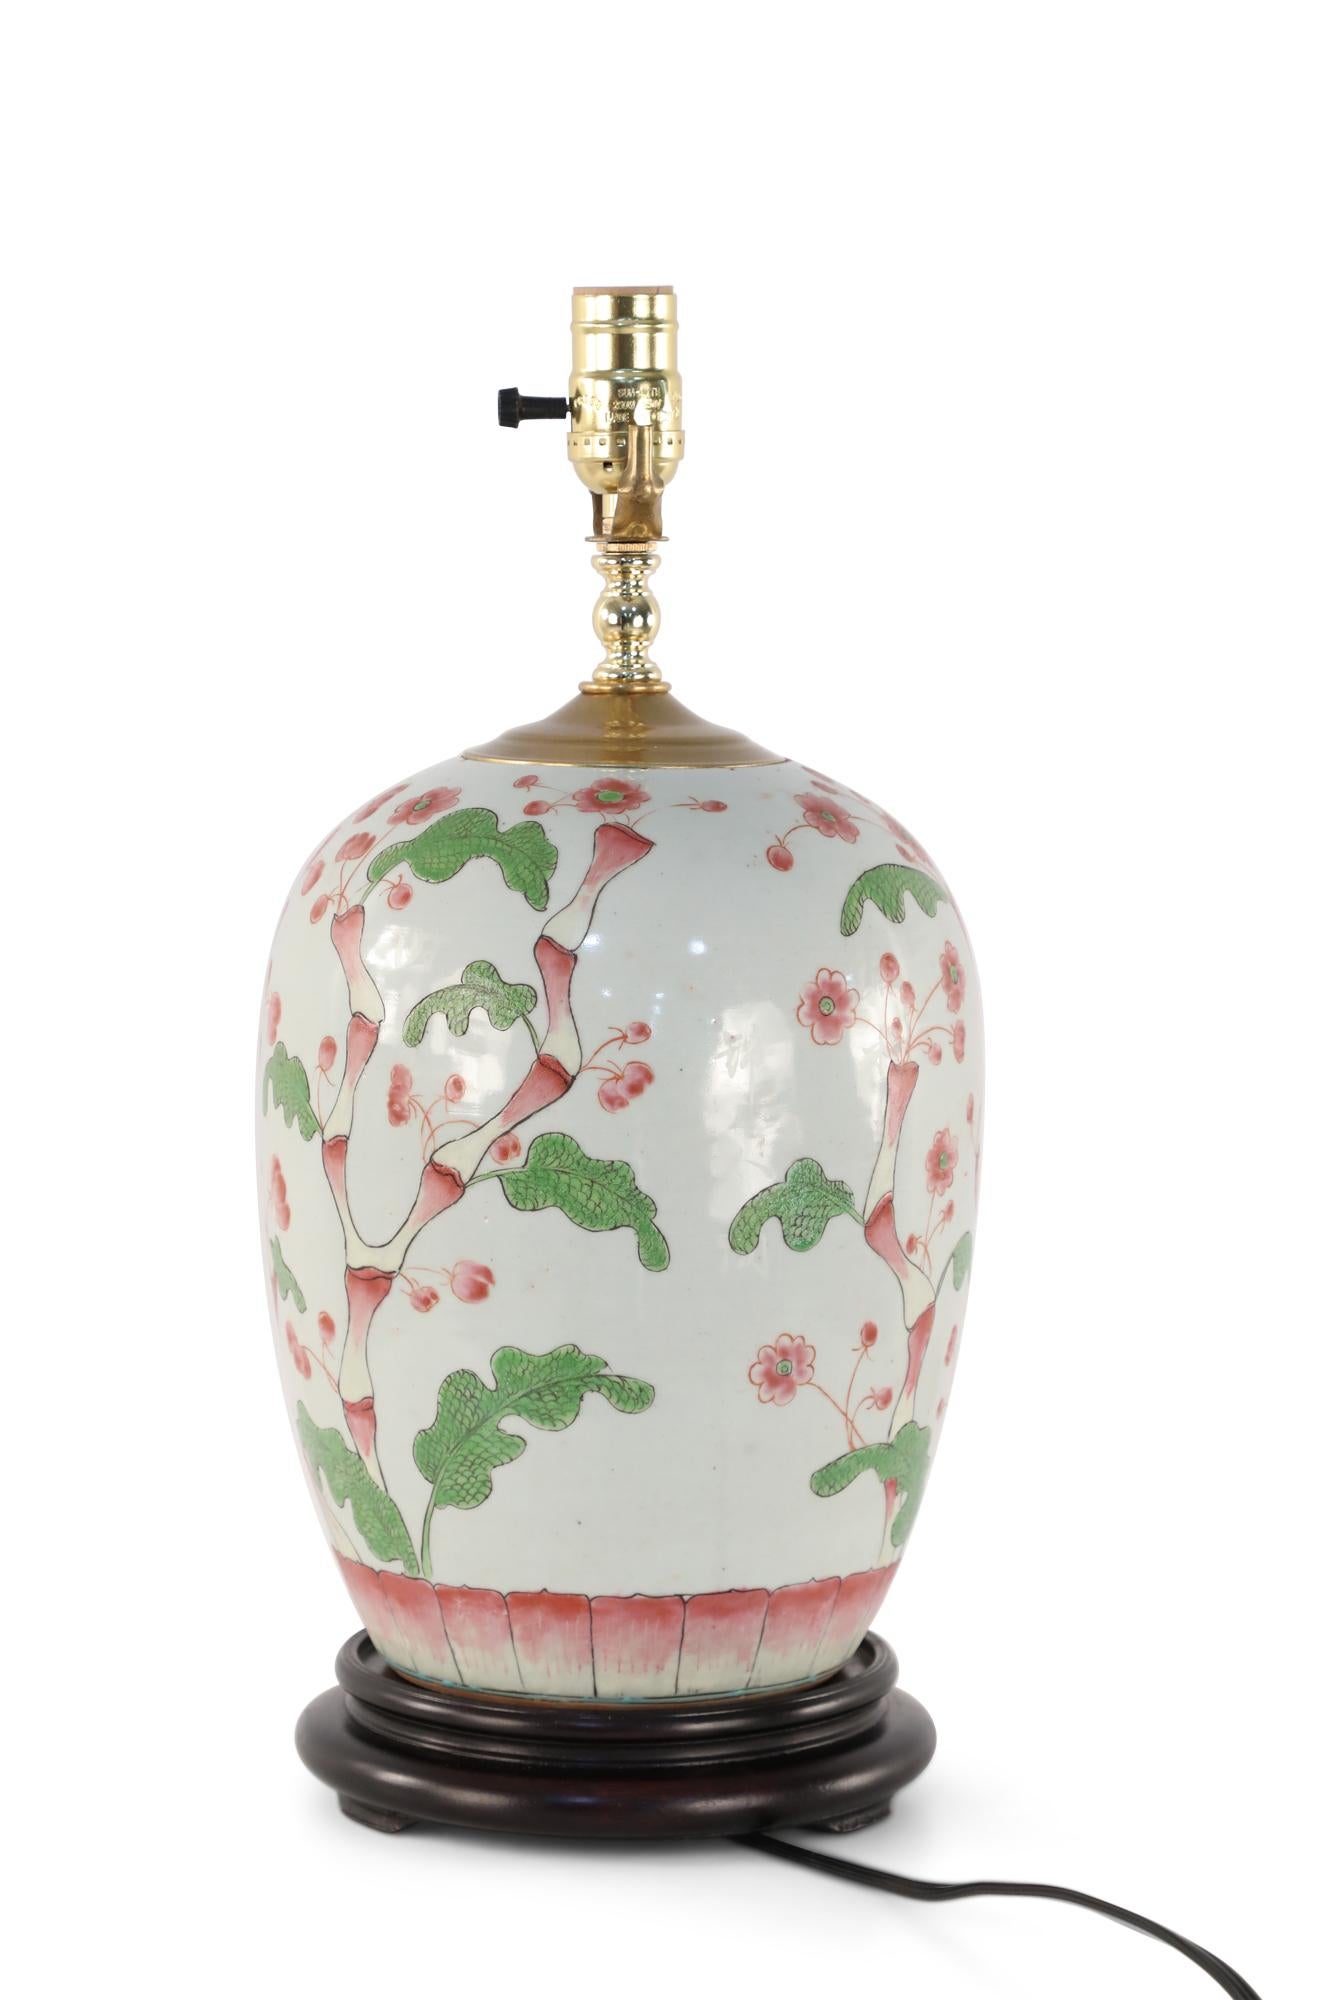 Lampe de table chinoise en porcelaine blanc cassé composée d'un vase bulbeux avec un cerisier en fleur vert et rose poussant le long de sa forme, d'une base en bois et de ferrures en laiton.